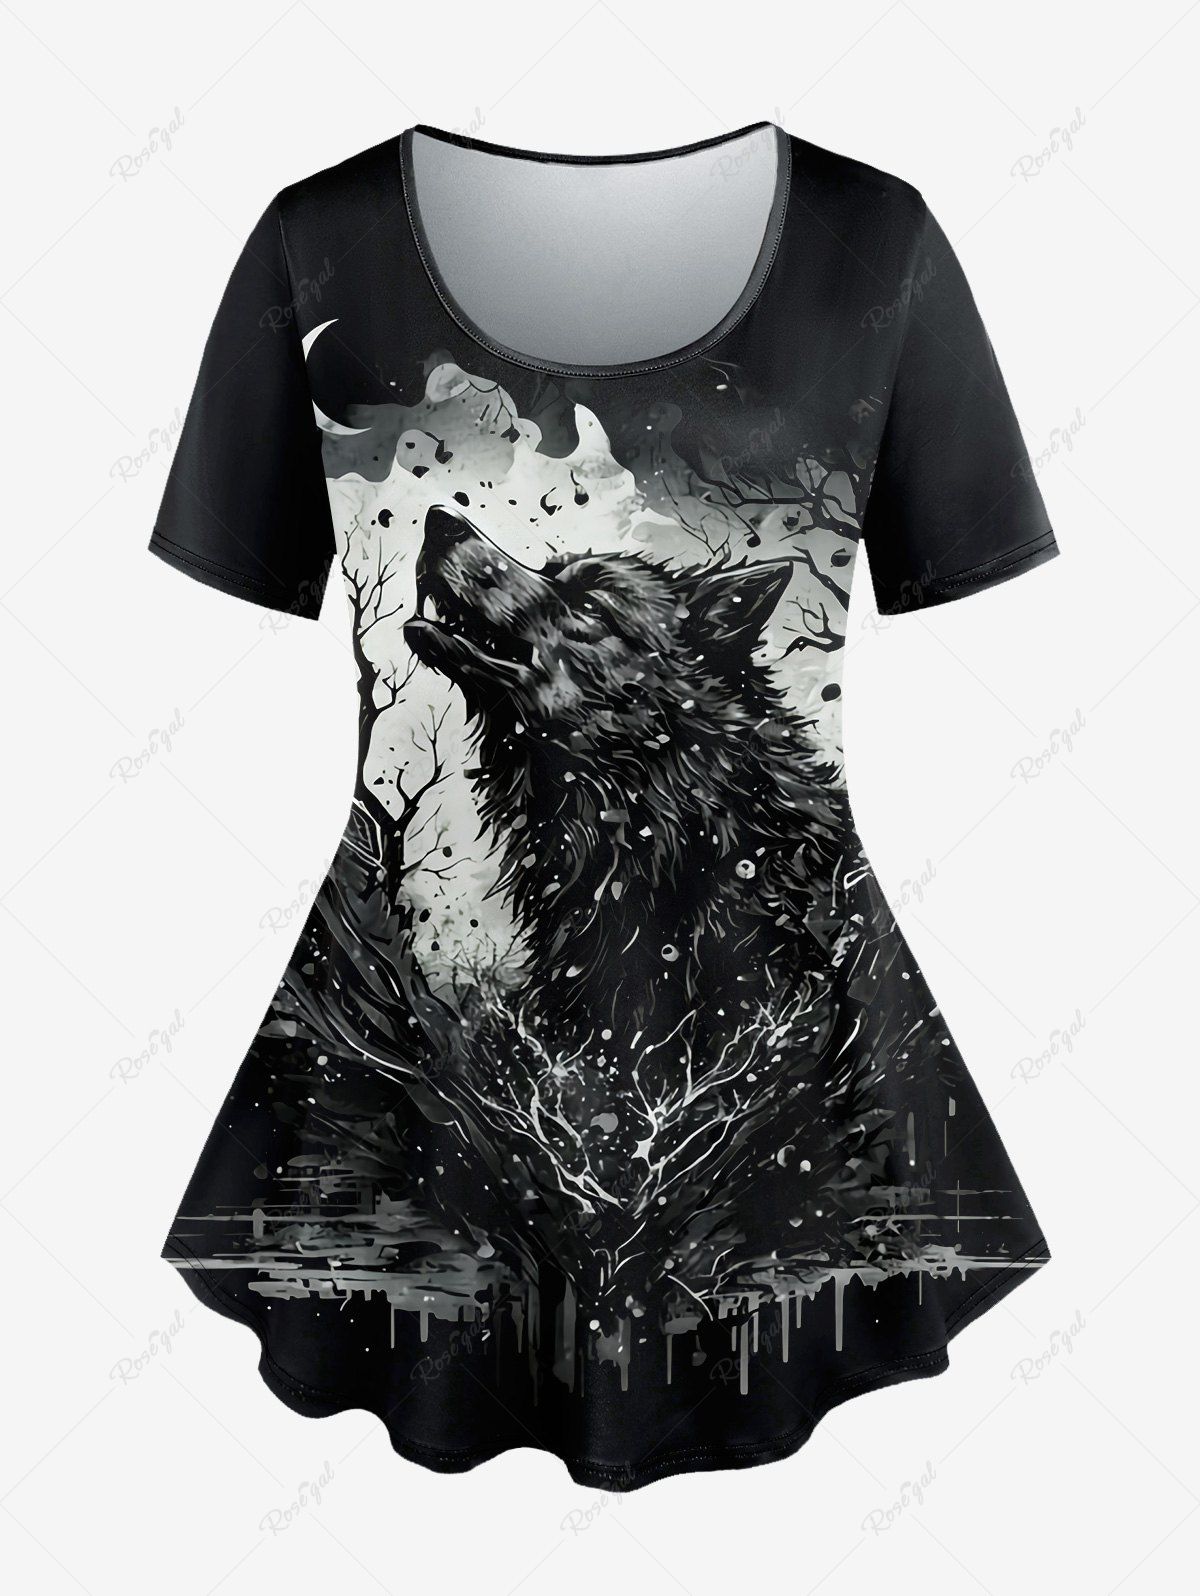 T-shirt Gothique Peinture Eclaboussée Loup et Lune Imprimés à Manches Courtes Noir M